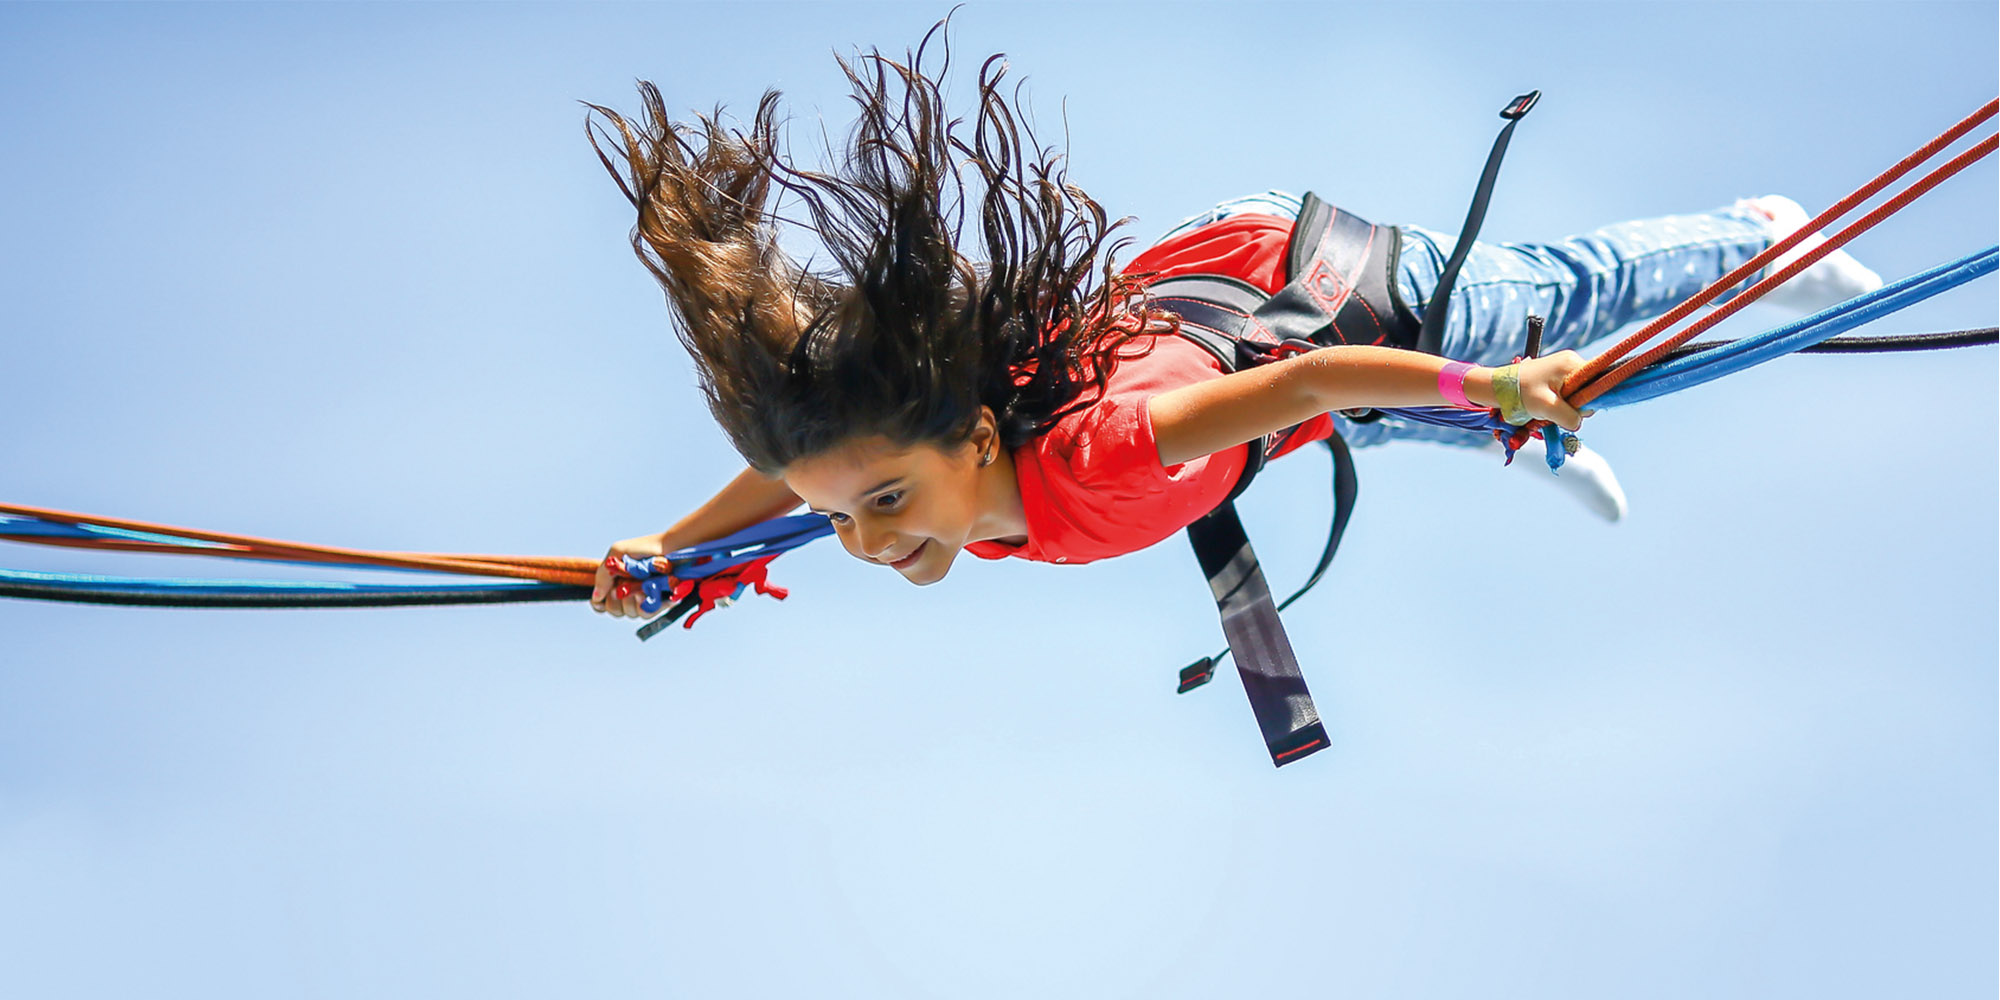 Ein braunhaariges Mädchen befindet sich gerade in der Luft, die Haare fliegen nach oben. Sie hängt in einem Sichtheitsgurts eines Trampolins.